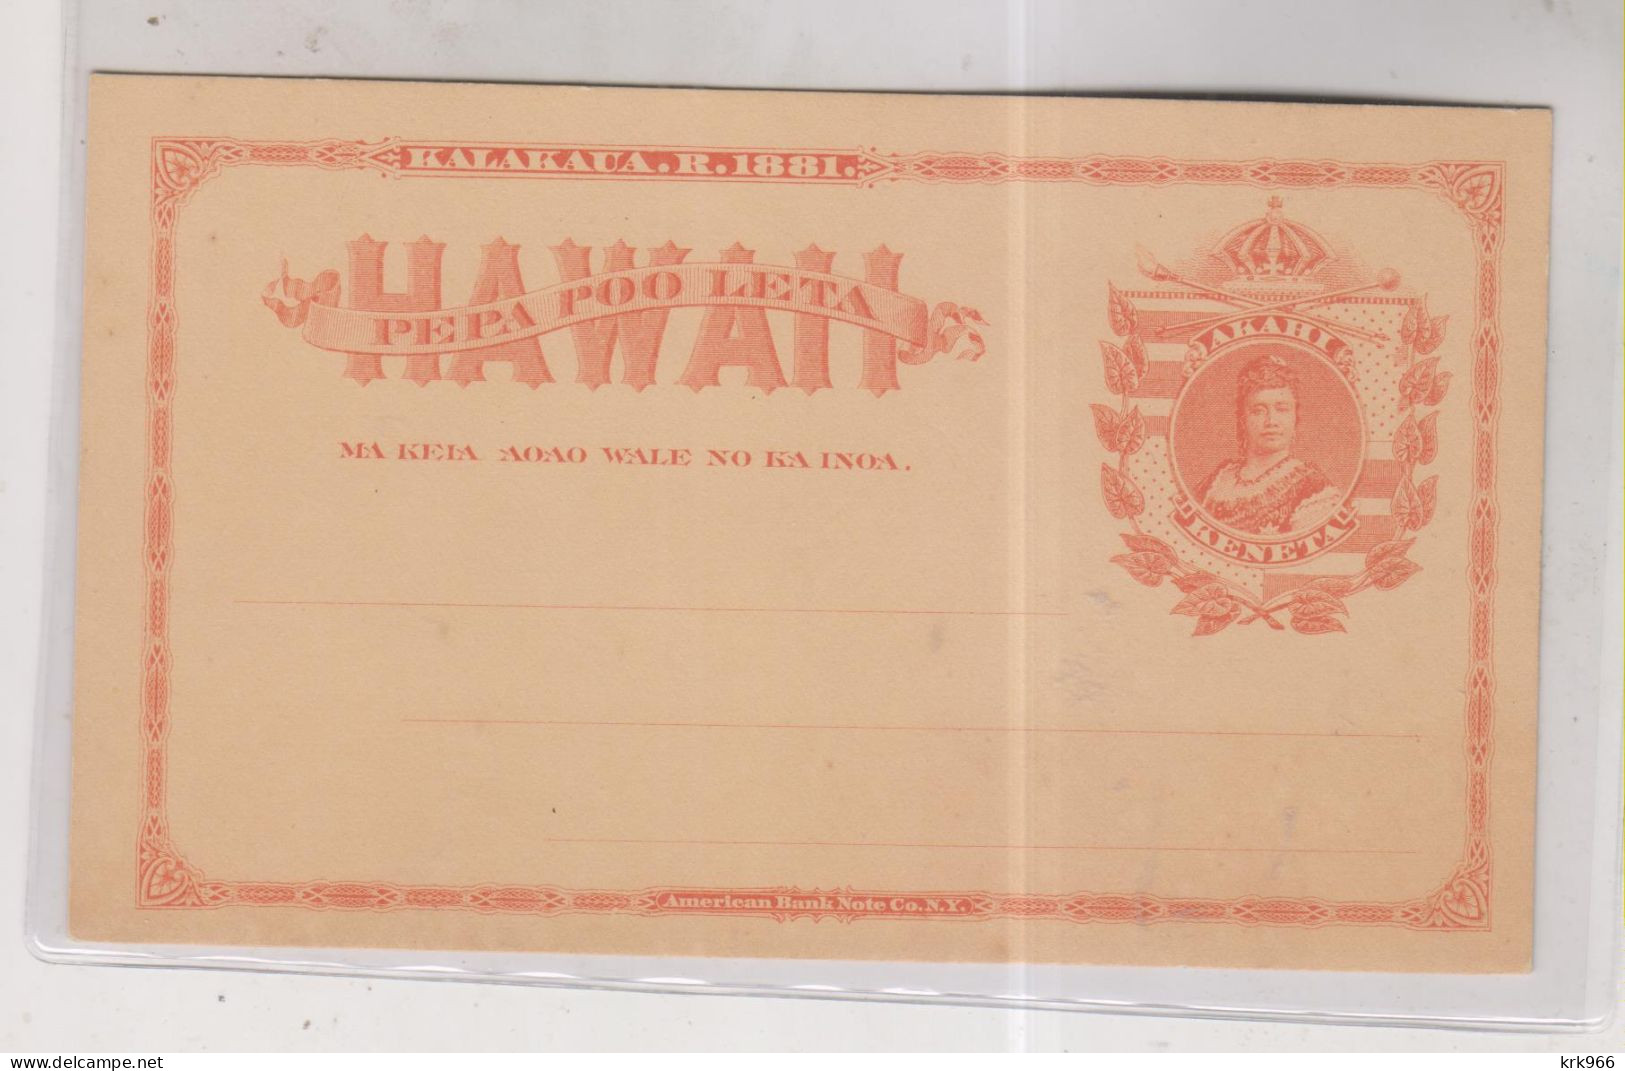 HAWAII Postal Stationery Unused - Hawaii